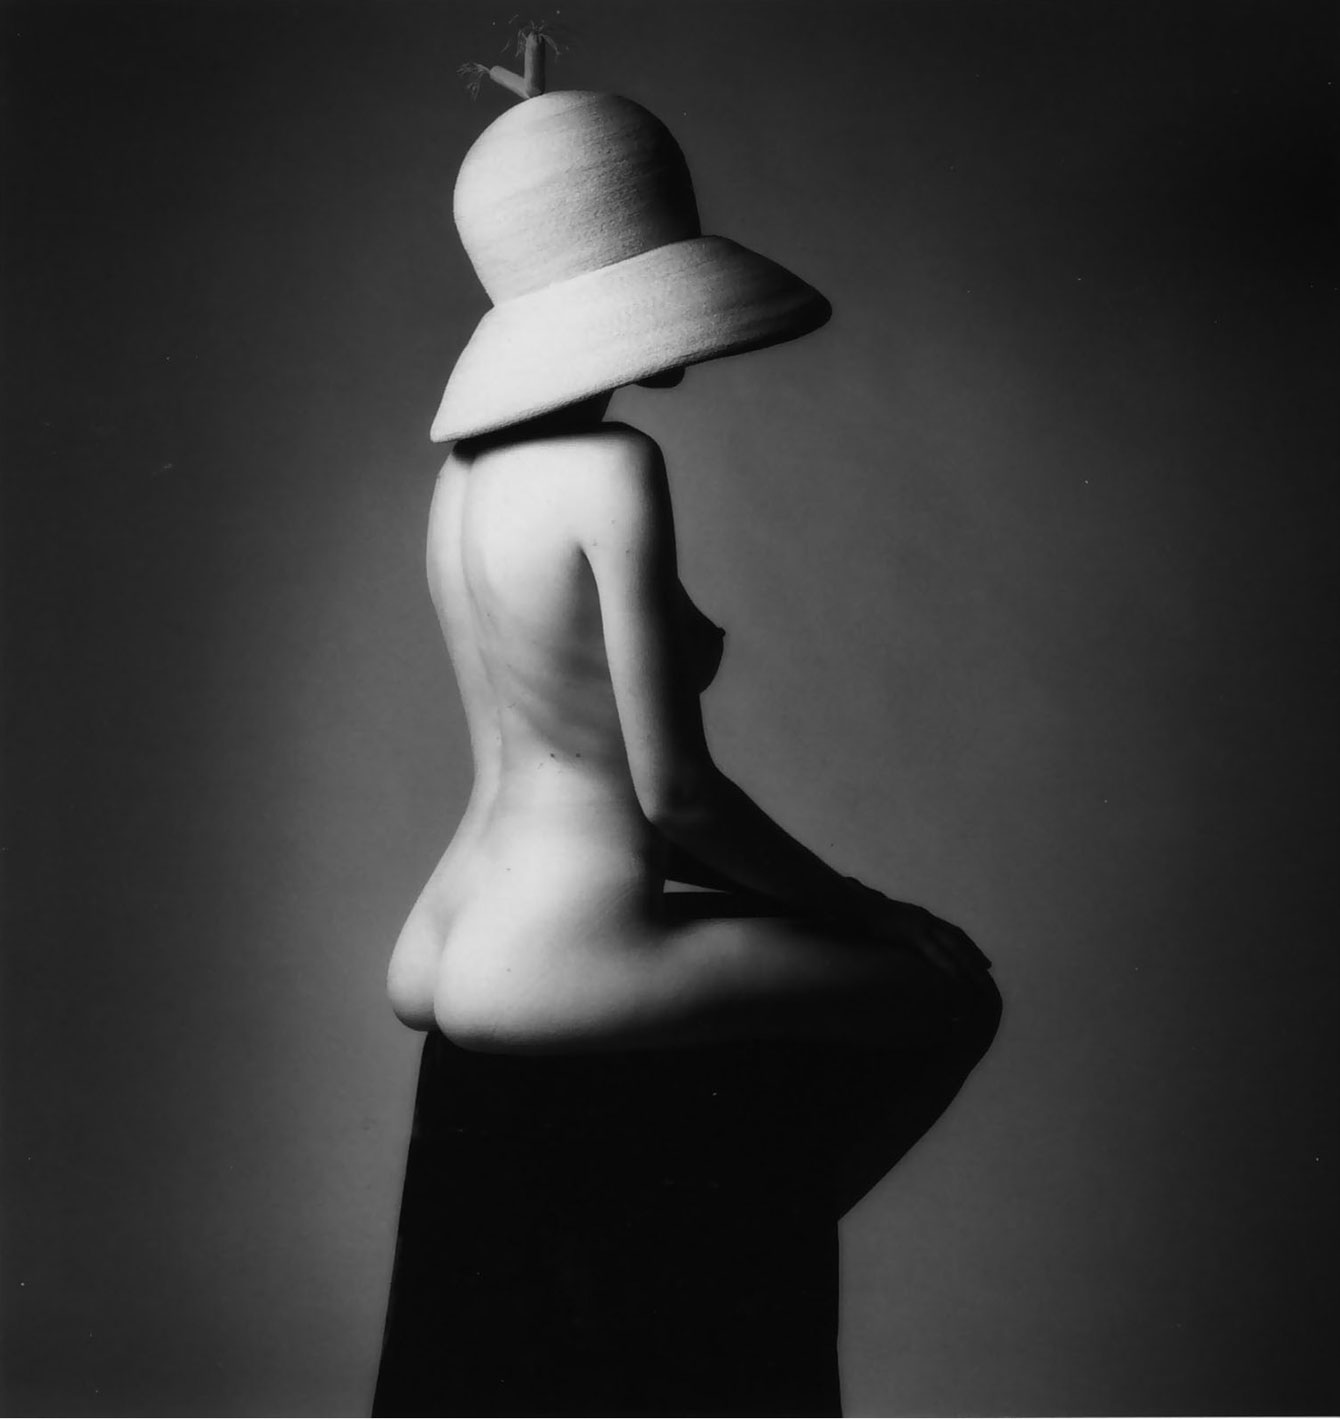 Didelė skrybėlė, Fotografas: Jeanloup Sieff, 1995